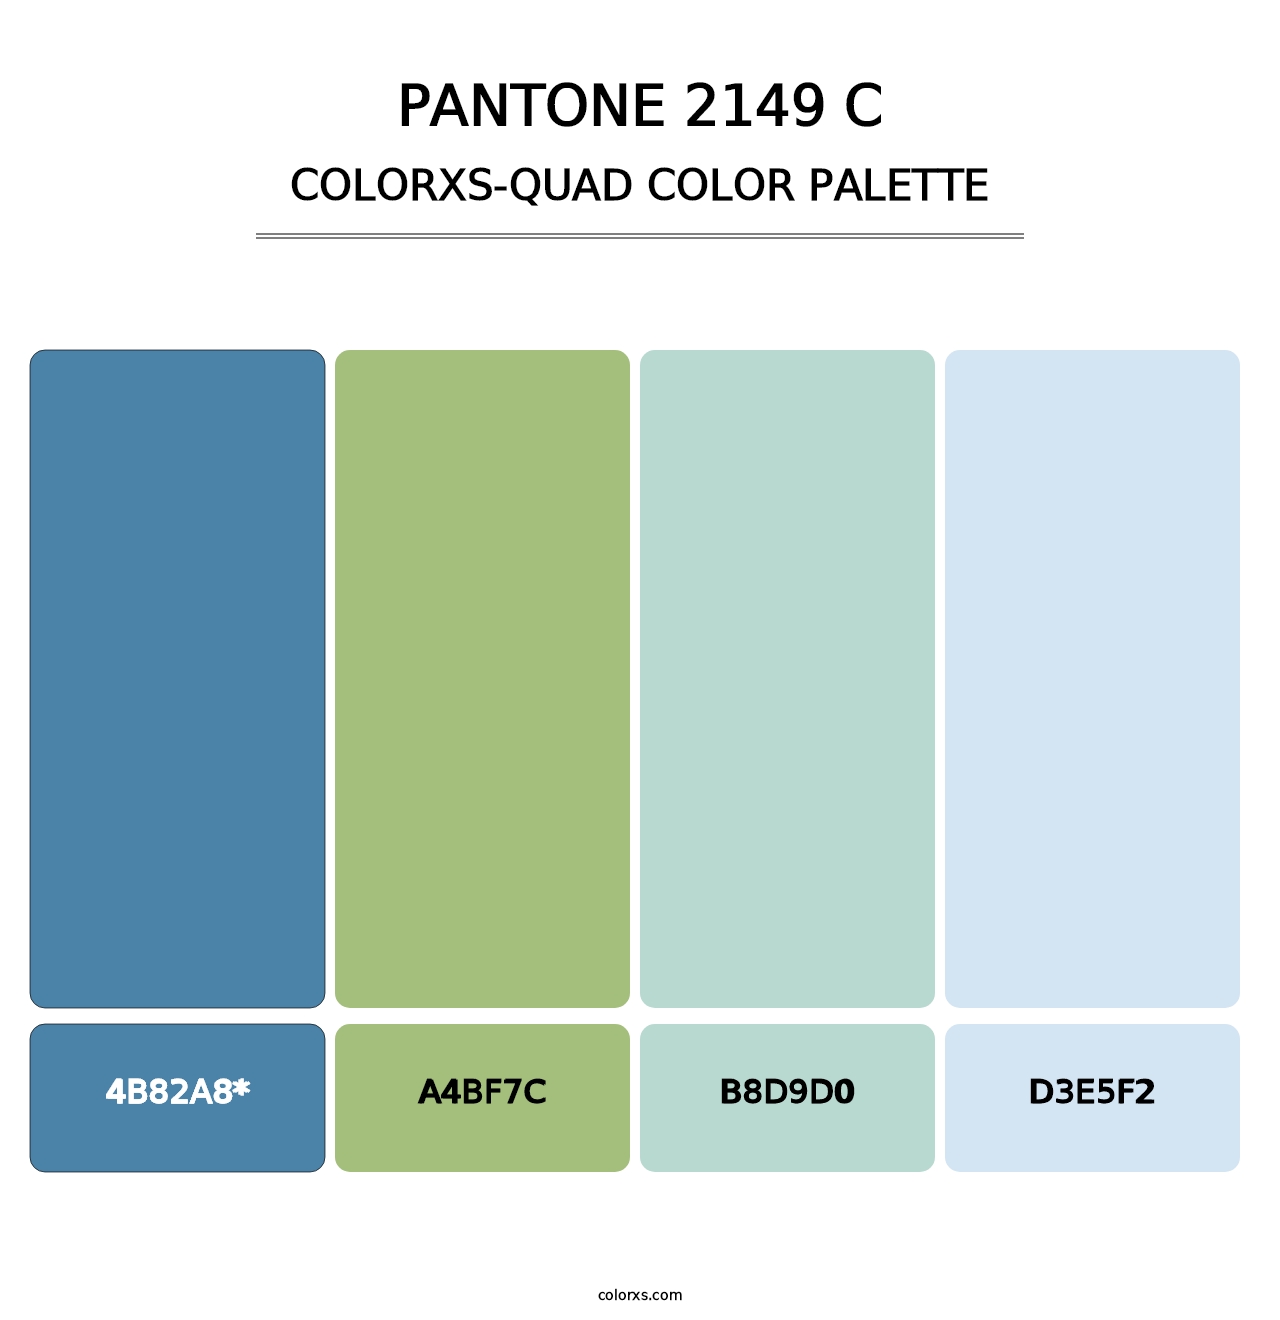 PANTONE 2149 C - Colorxs Quad Palette